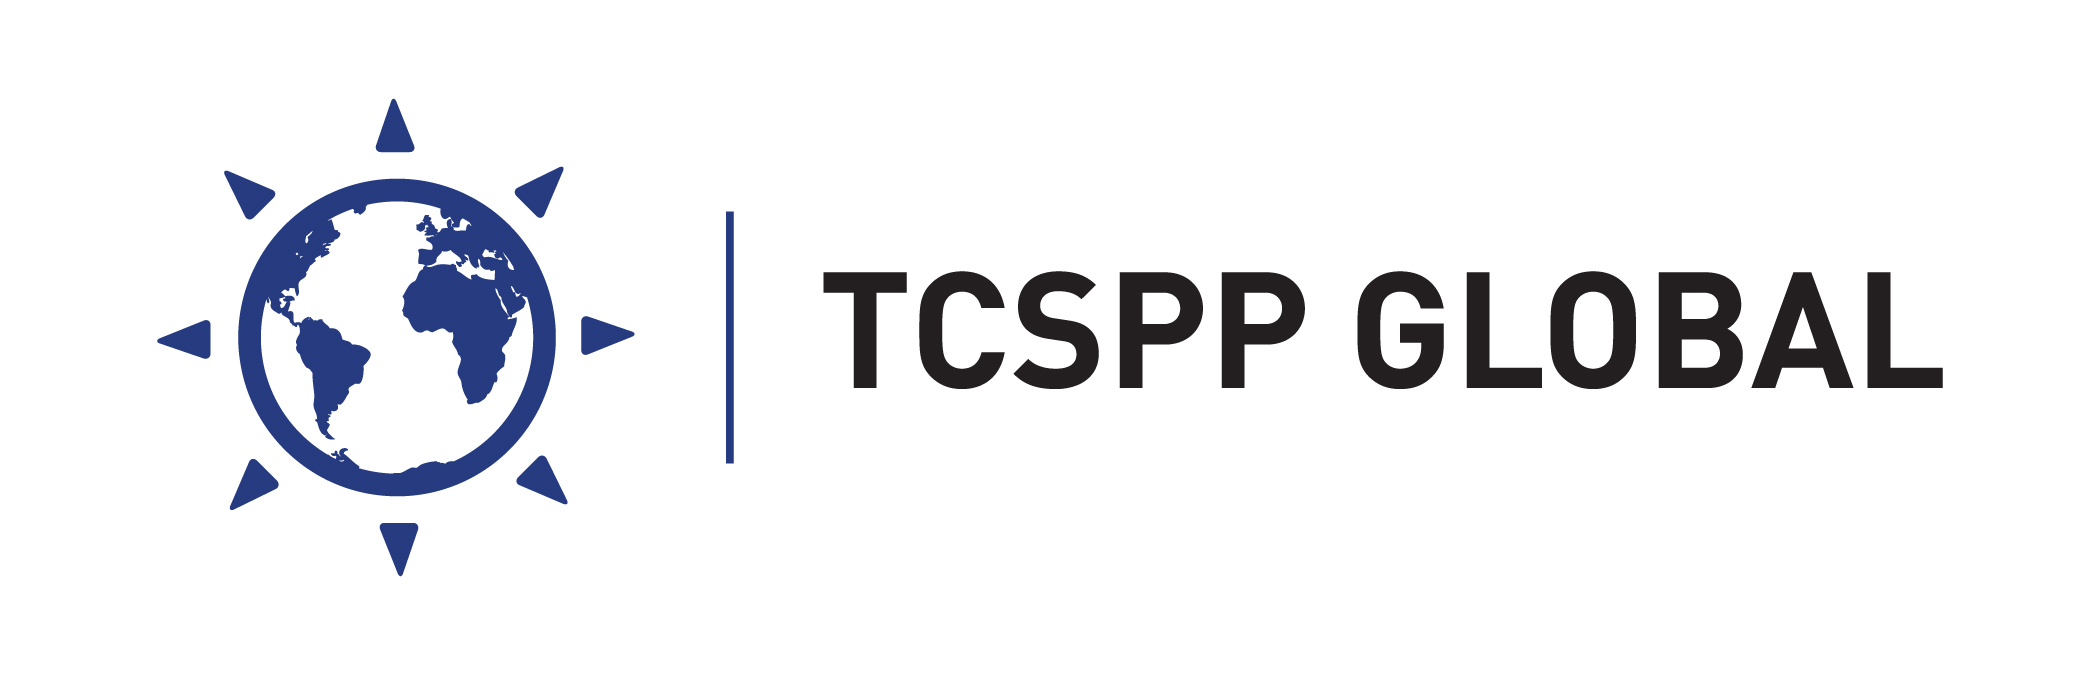 TCSPP Global-01.jpg